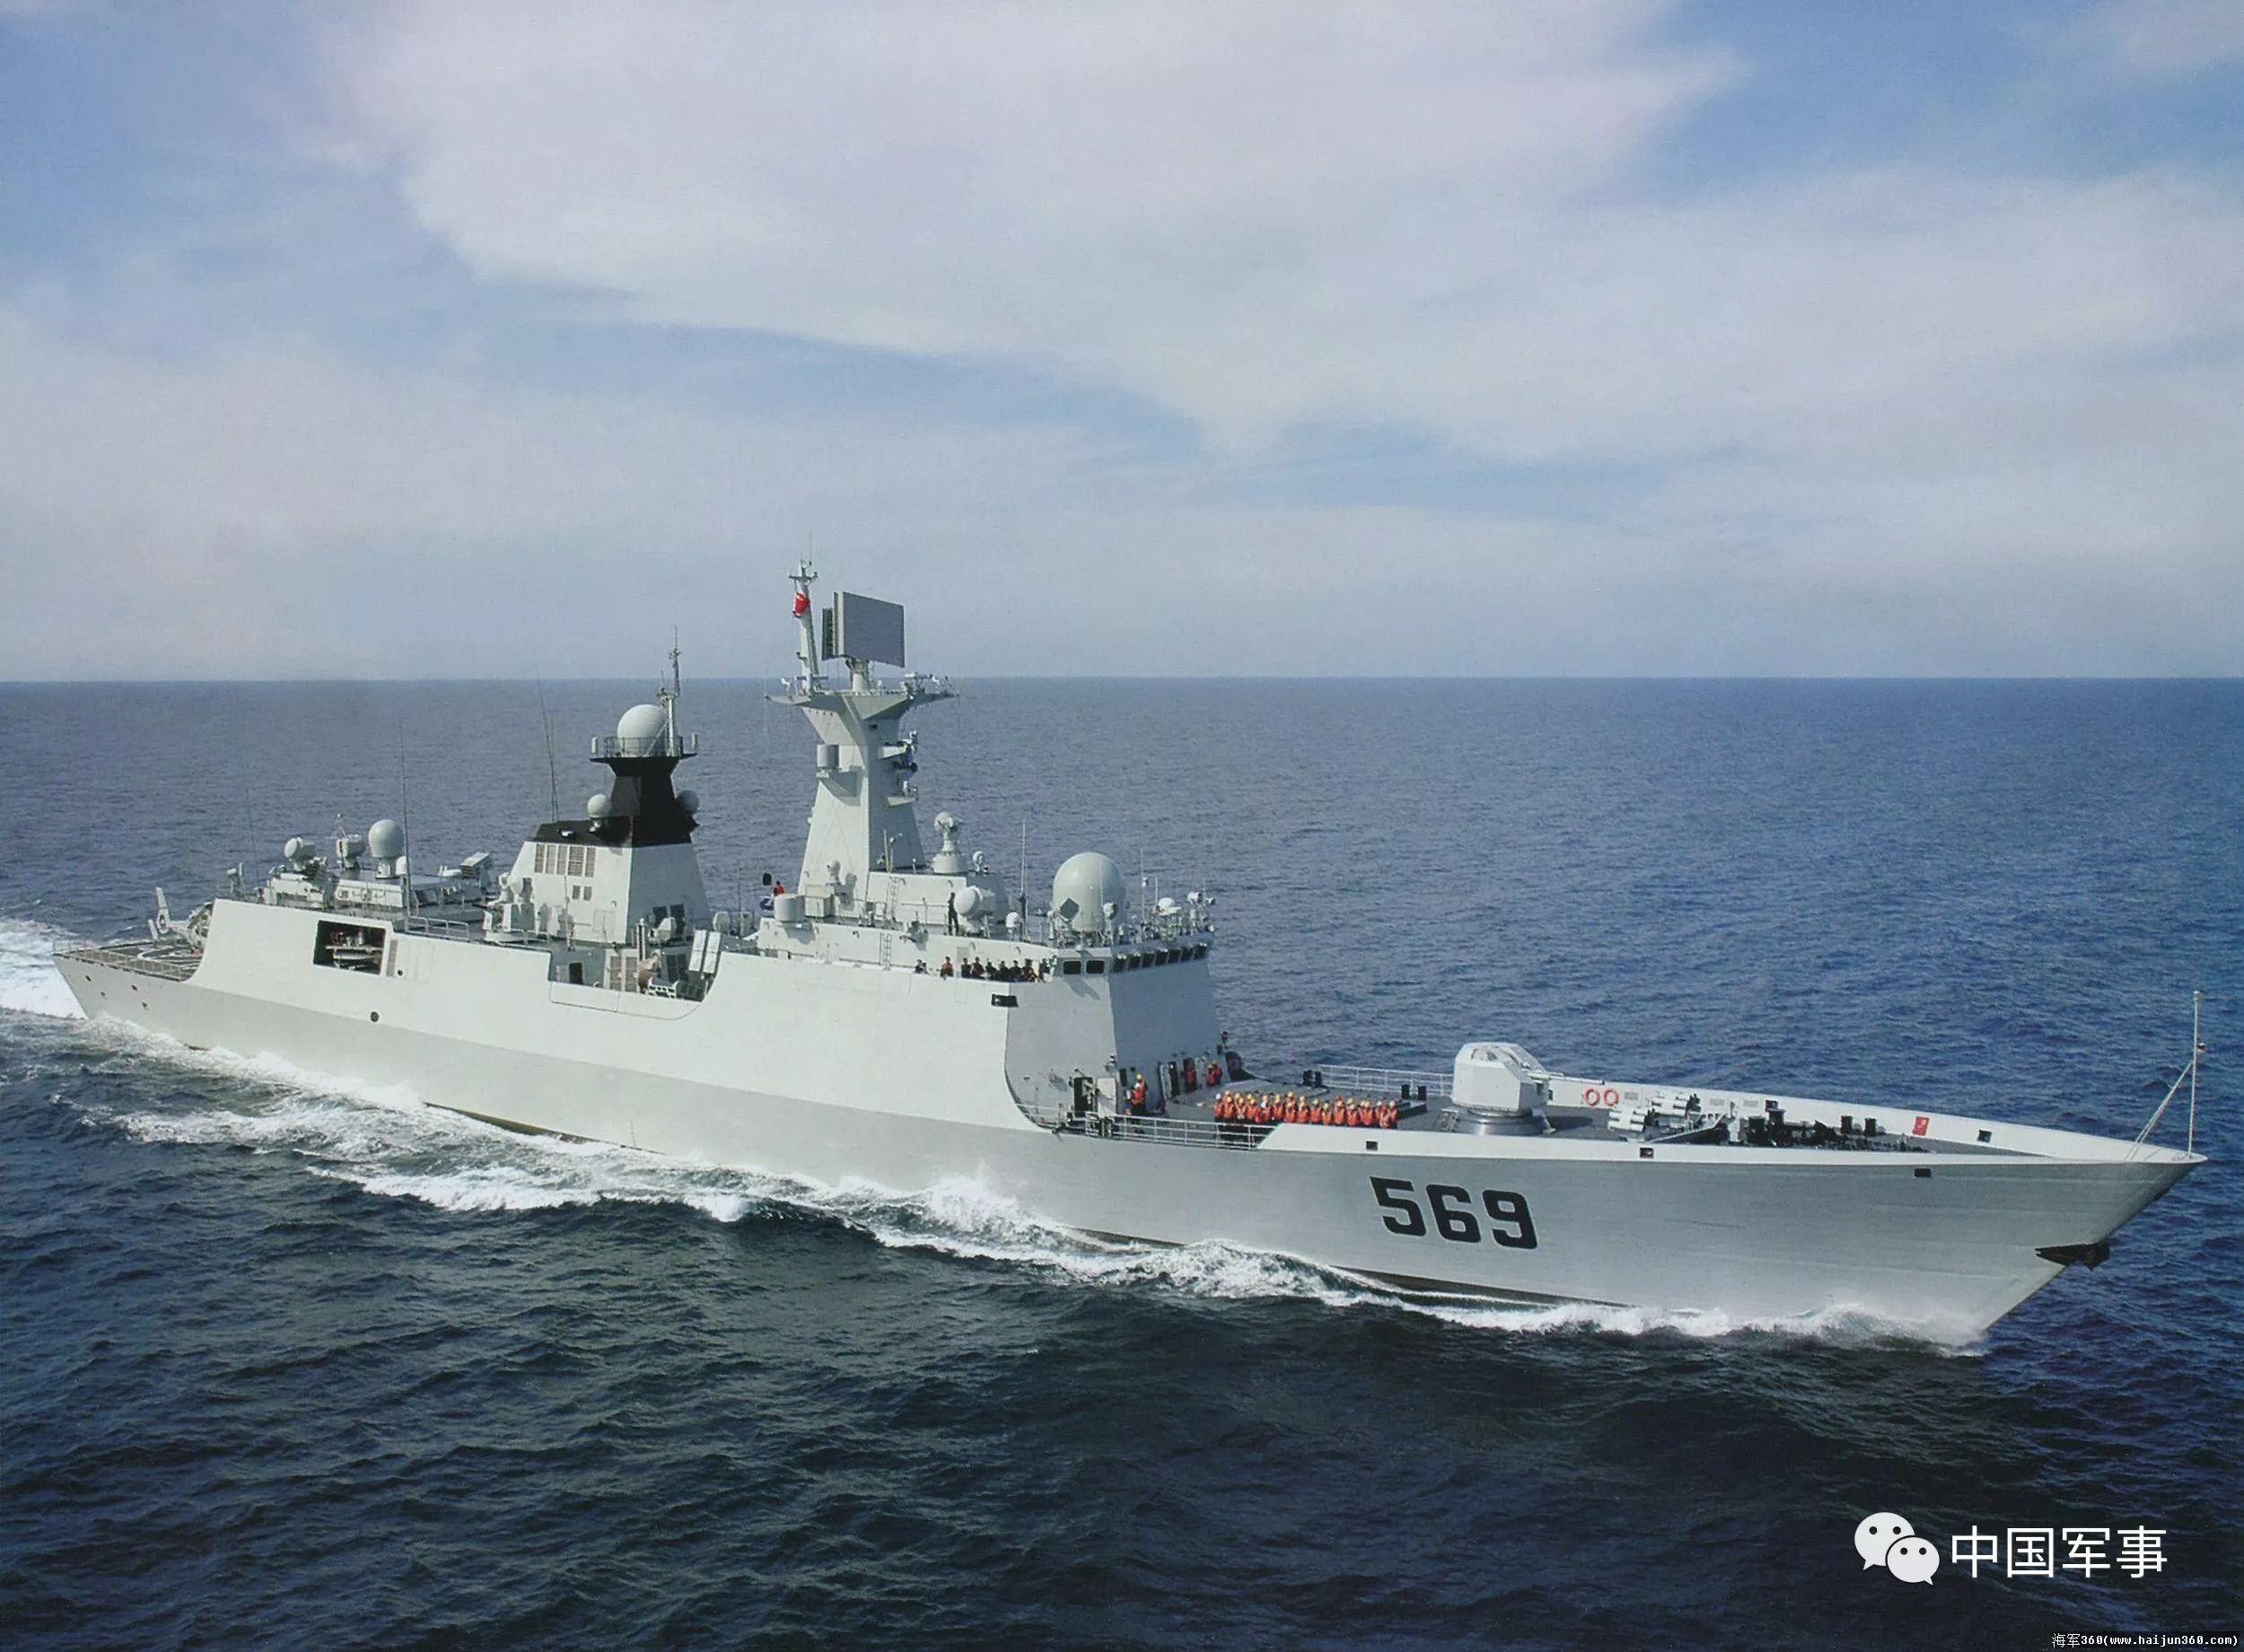 了不起我的国!这五年中国海军下水战舰超过80万吨!